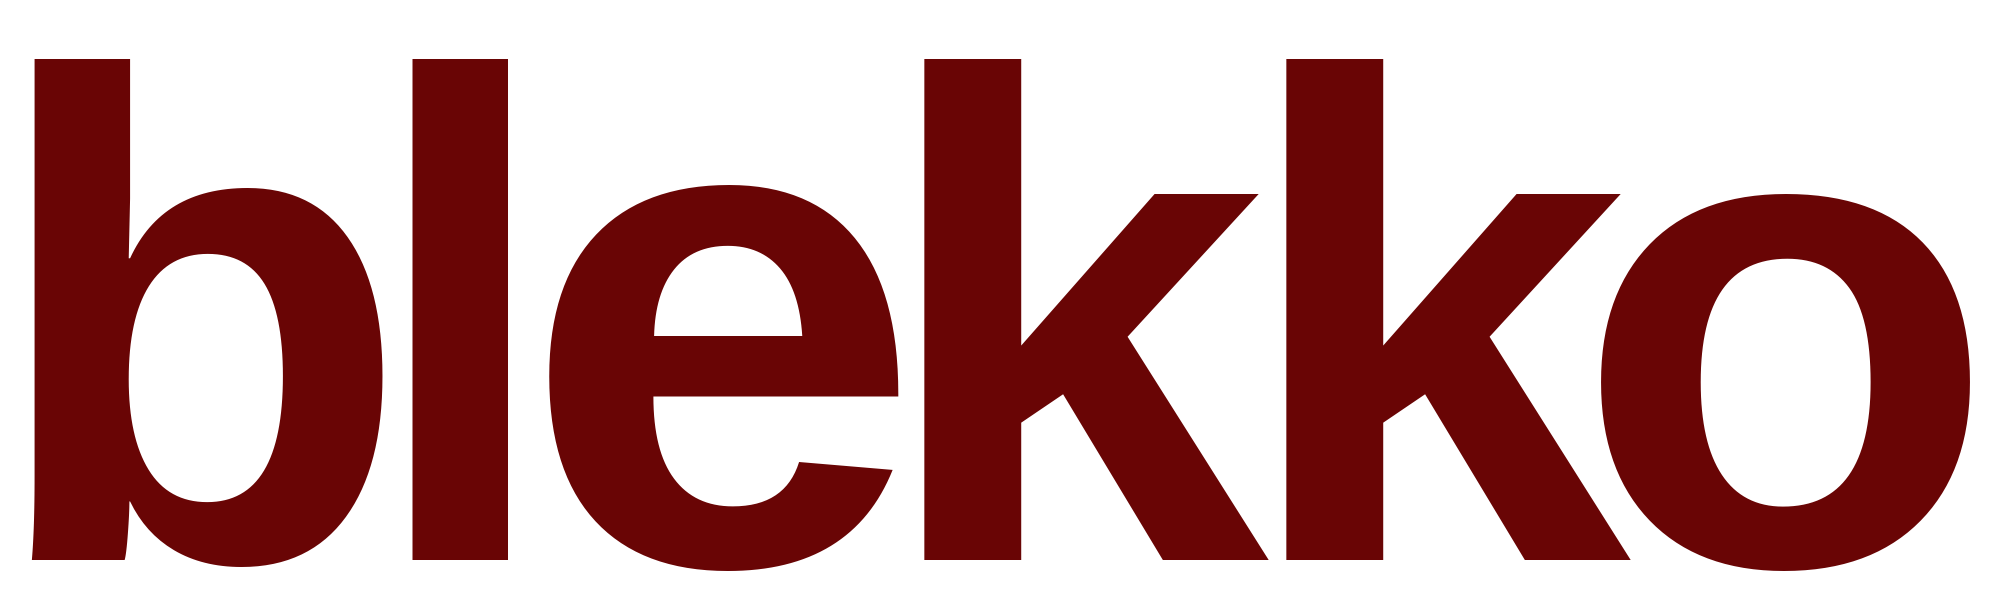 La característica única de Blekko son sus 'slashtags', una herramienta para que los usuarios filtren los resultados que quieren obtener.